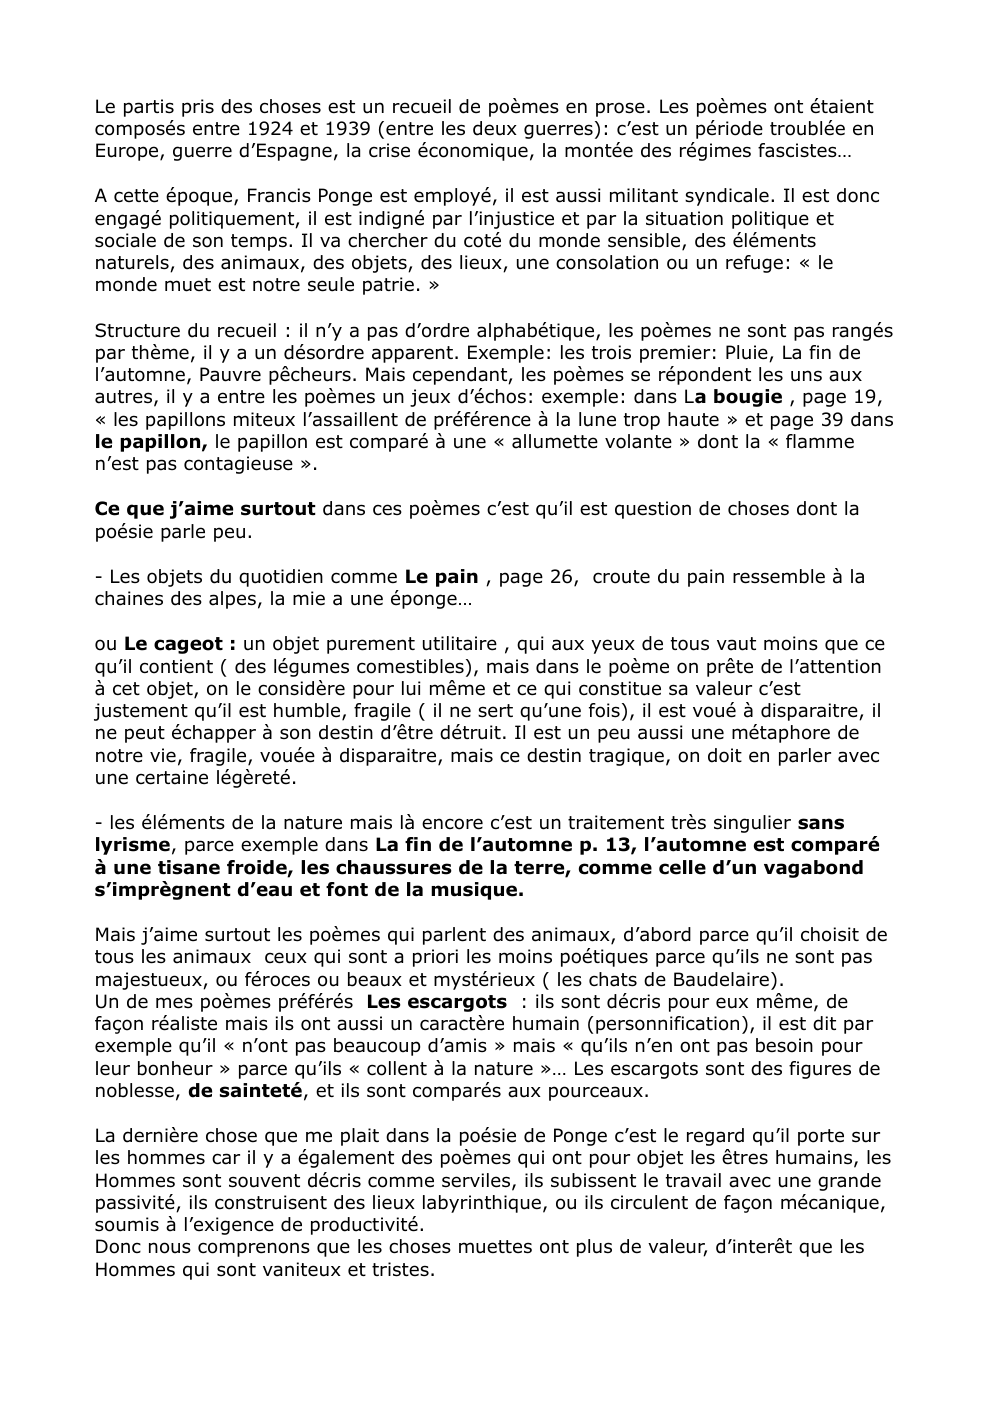 Prévisualisation du document présentation de l'oeuvre de Francis Ponge Le parti pris des choses pour l'oral de français